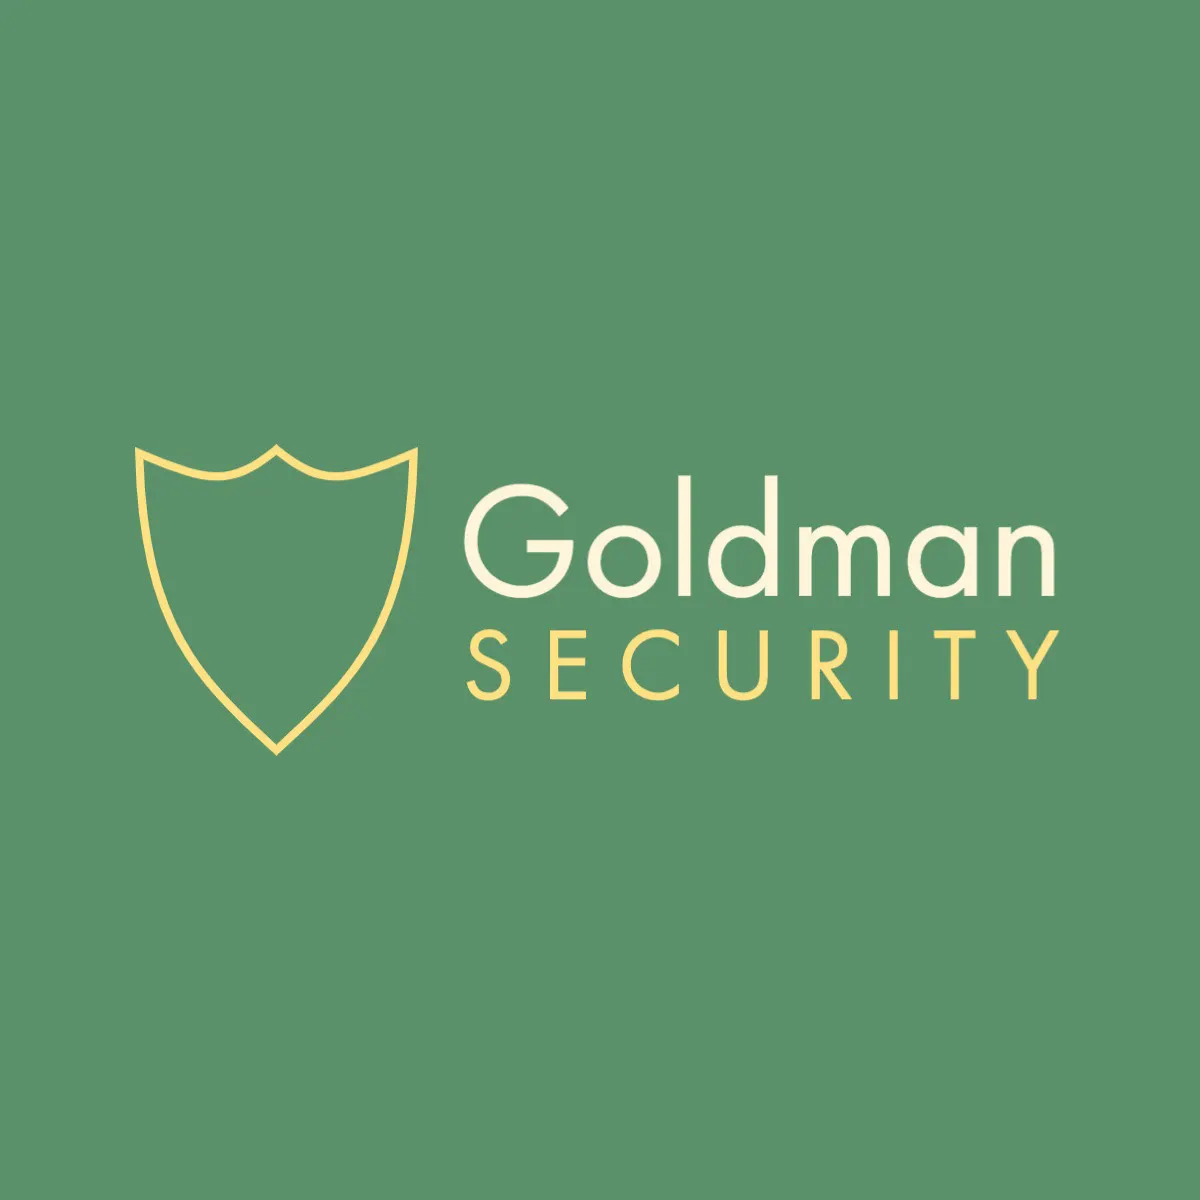 minimal green and gold shield logo